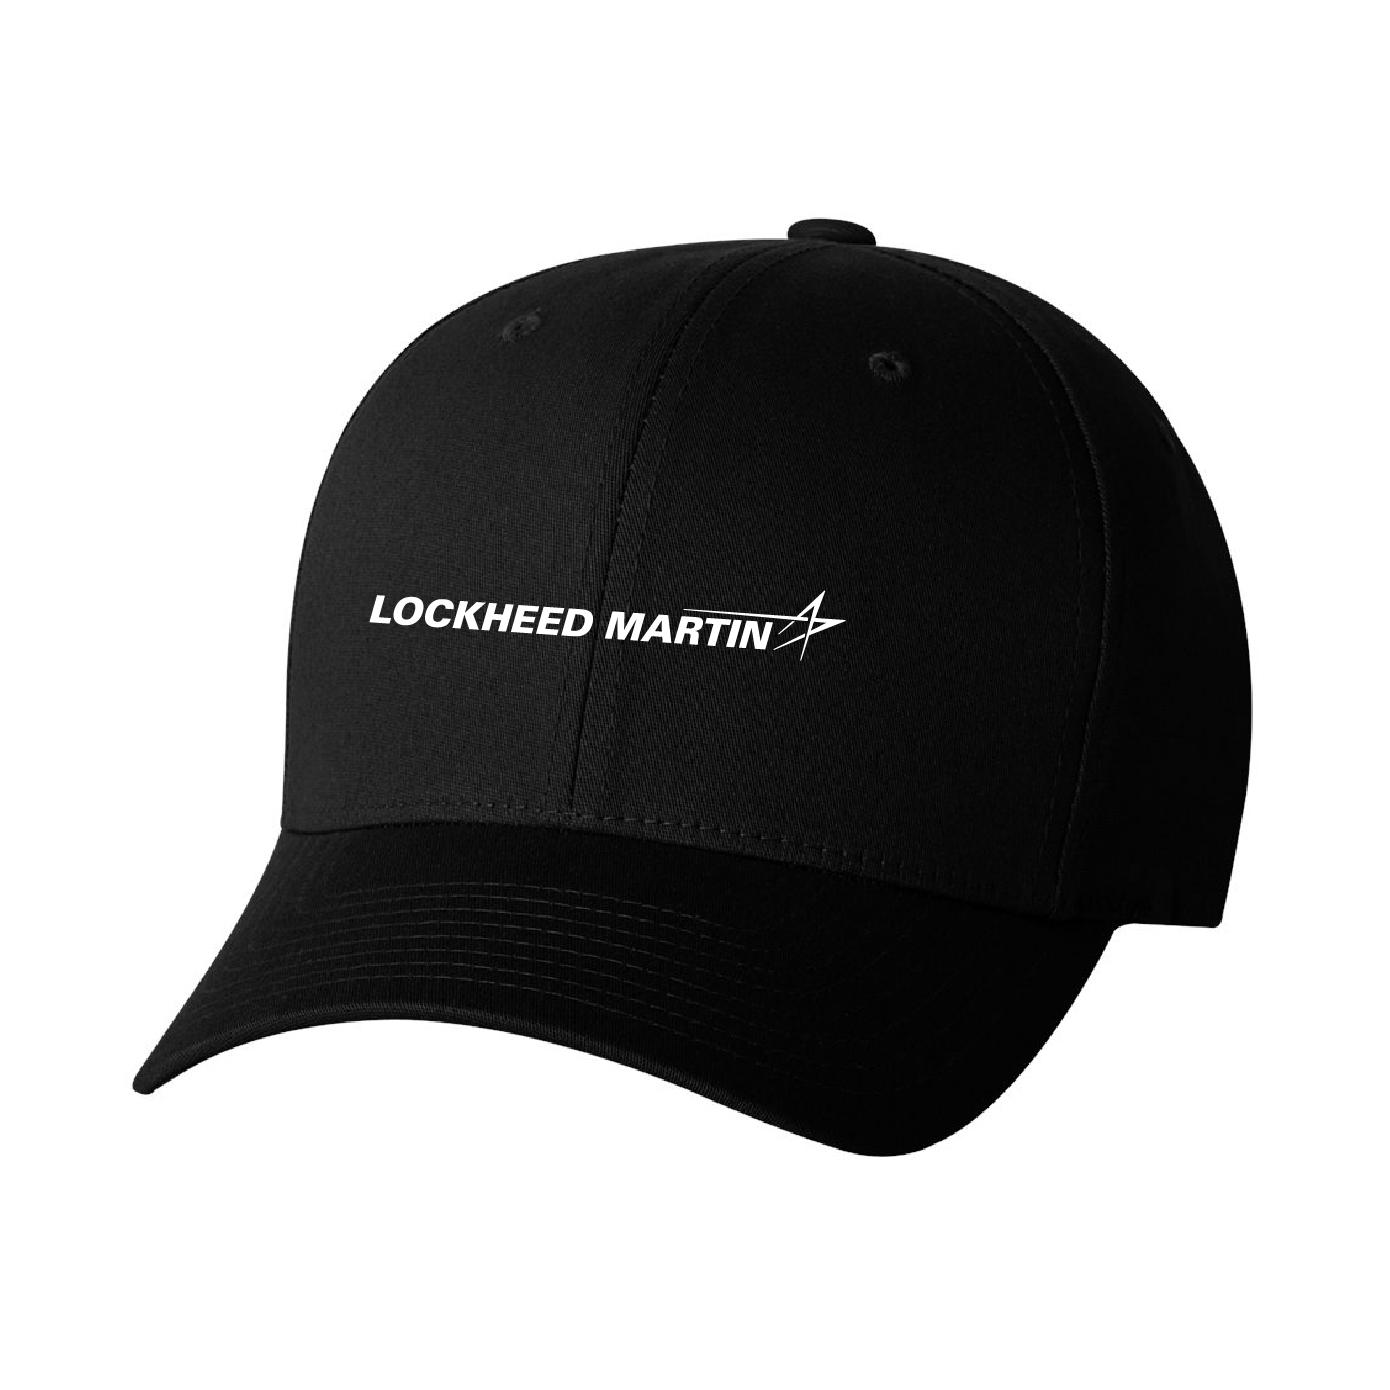 Lockheed Martin Adult Flex Fit Cotton Twill Cap